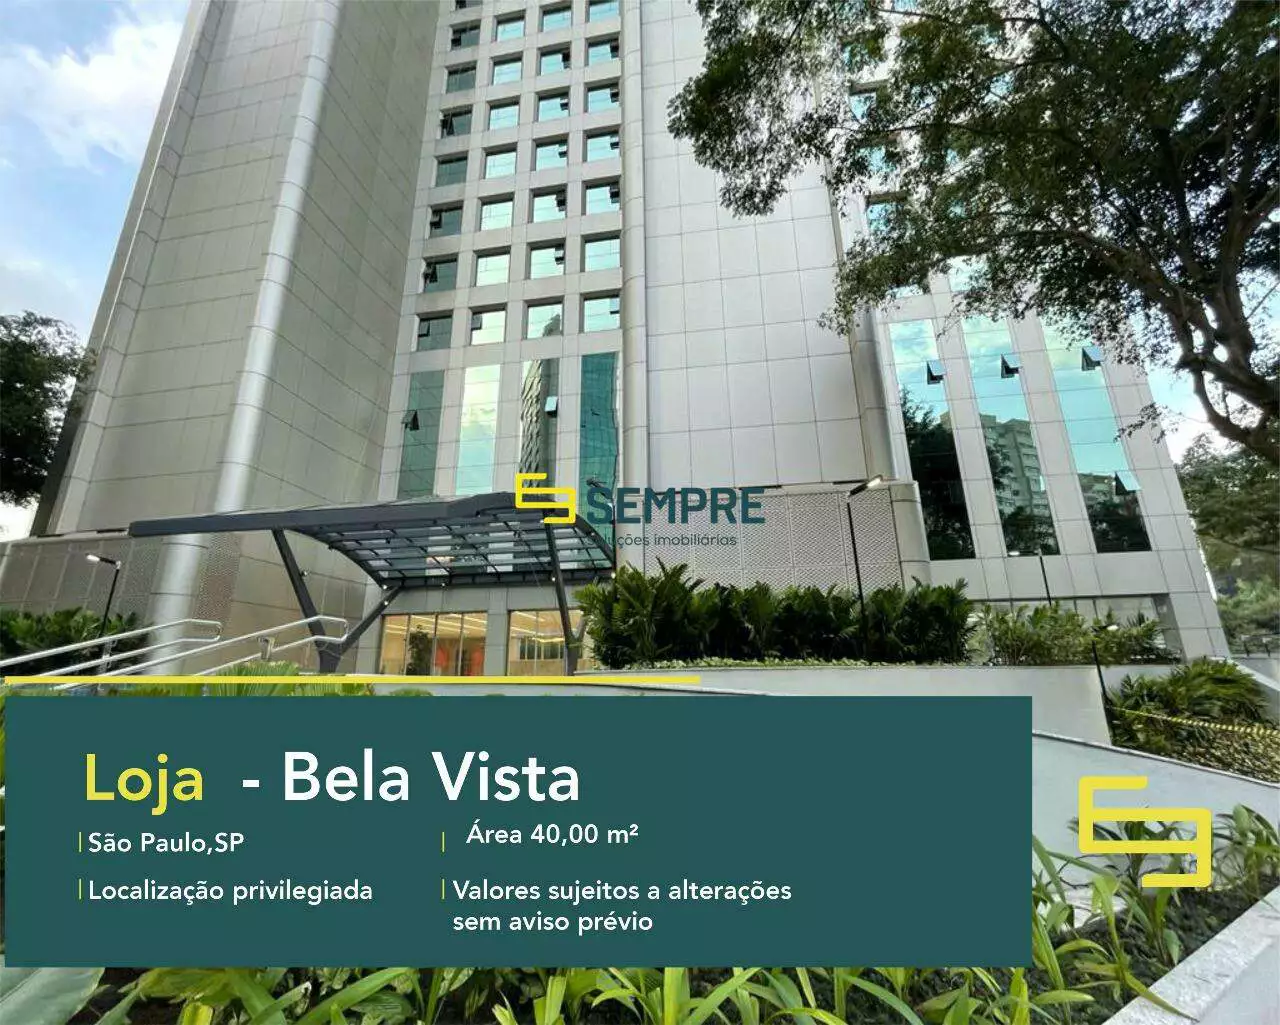 Loja para locação na cidade de São Paulo - Bela Vista, excelente localização. O estabelecimento comercial conta com área de 40,99 m².